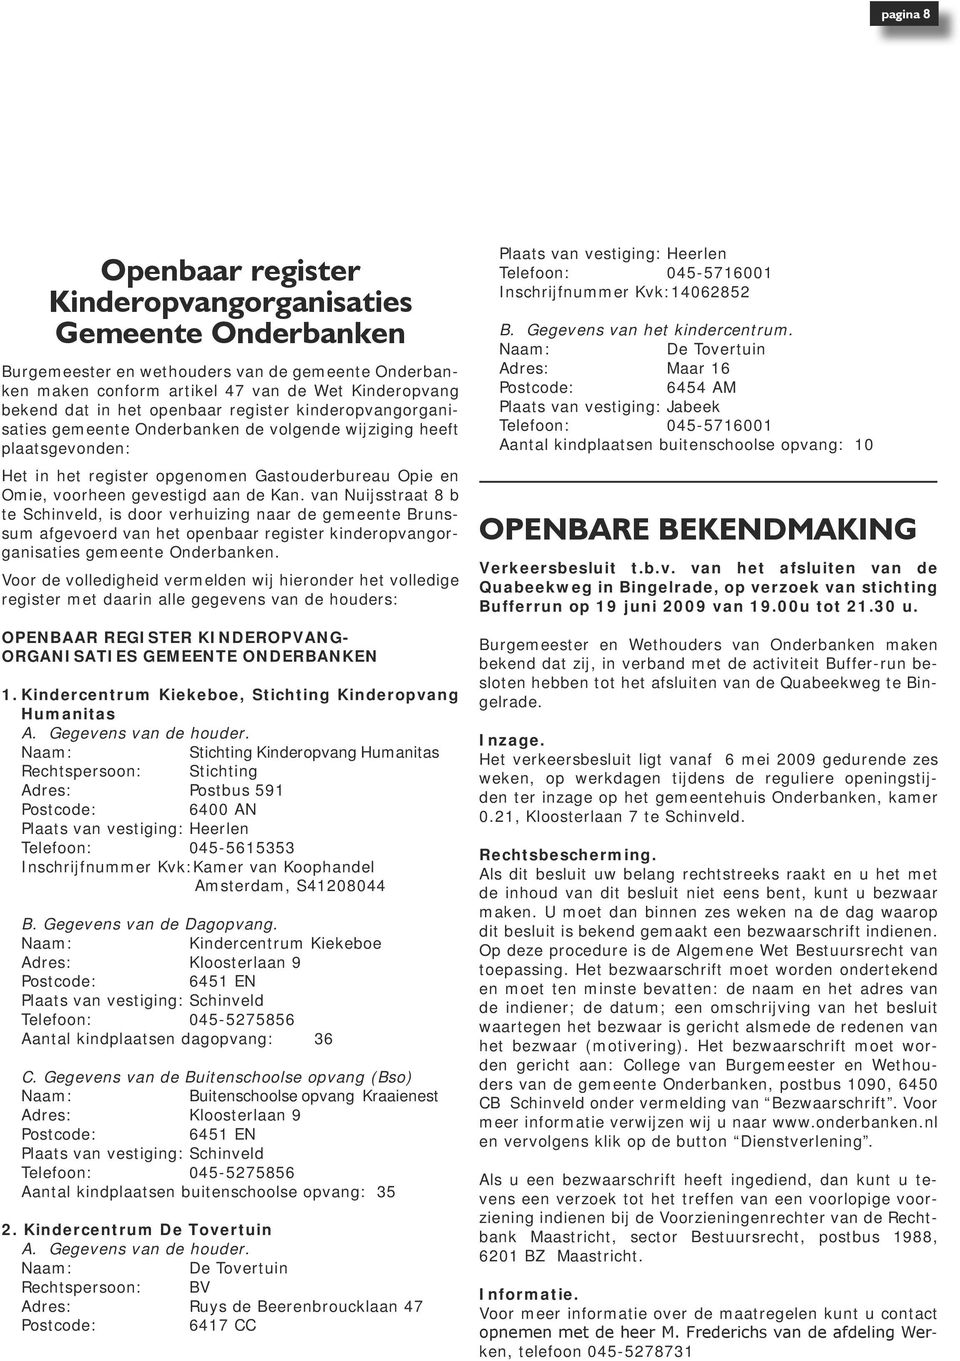 van Nuijsstraat 8 b te Schinveld, is door verhuizing naar de gemeente Brunssum afgevoerd van het openbaar register kinderopvangorganisaties gemeente Onderbanken.